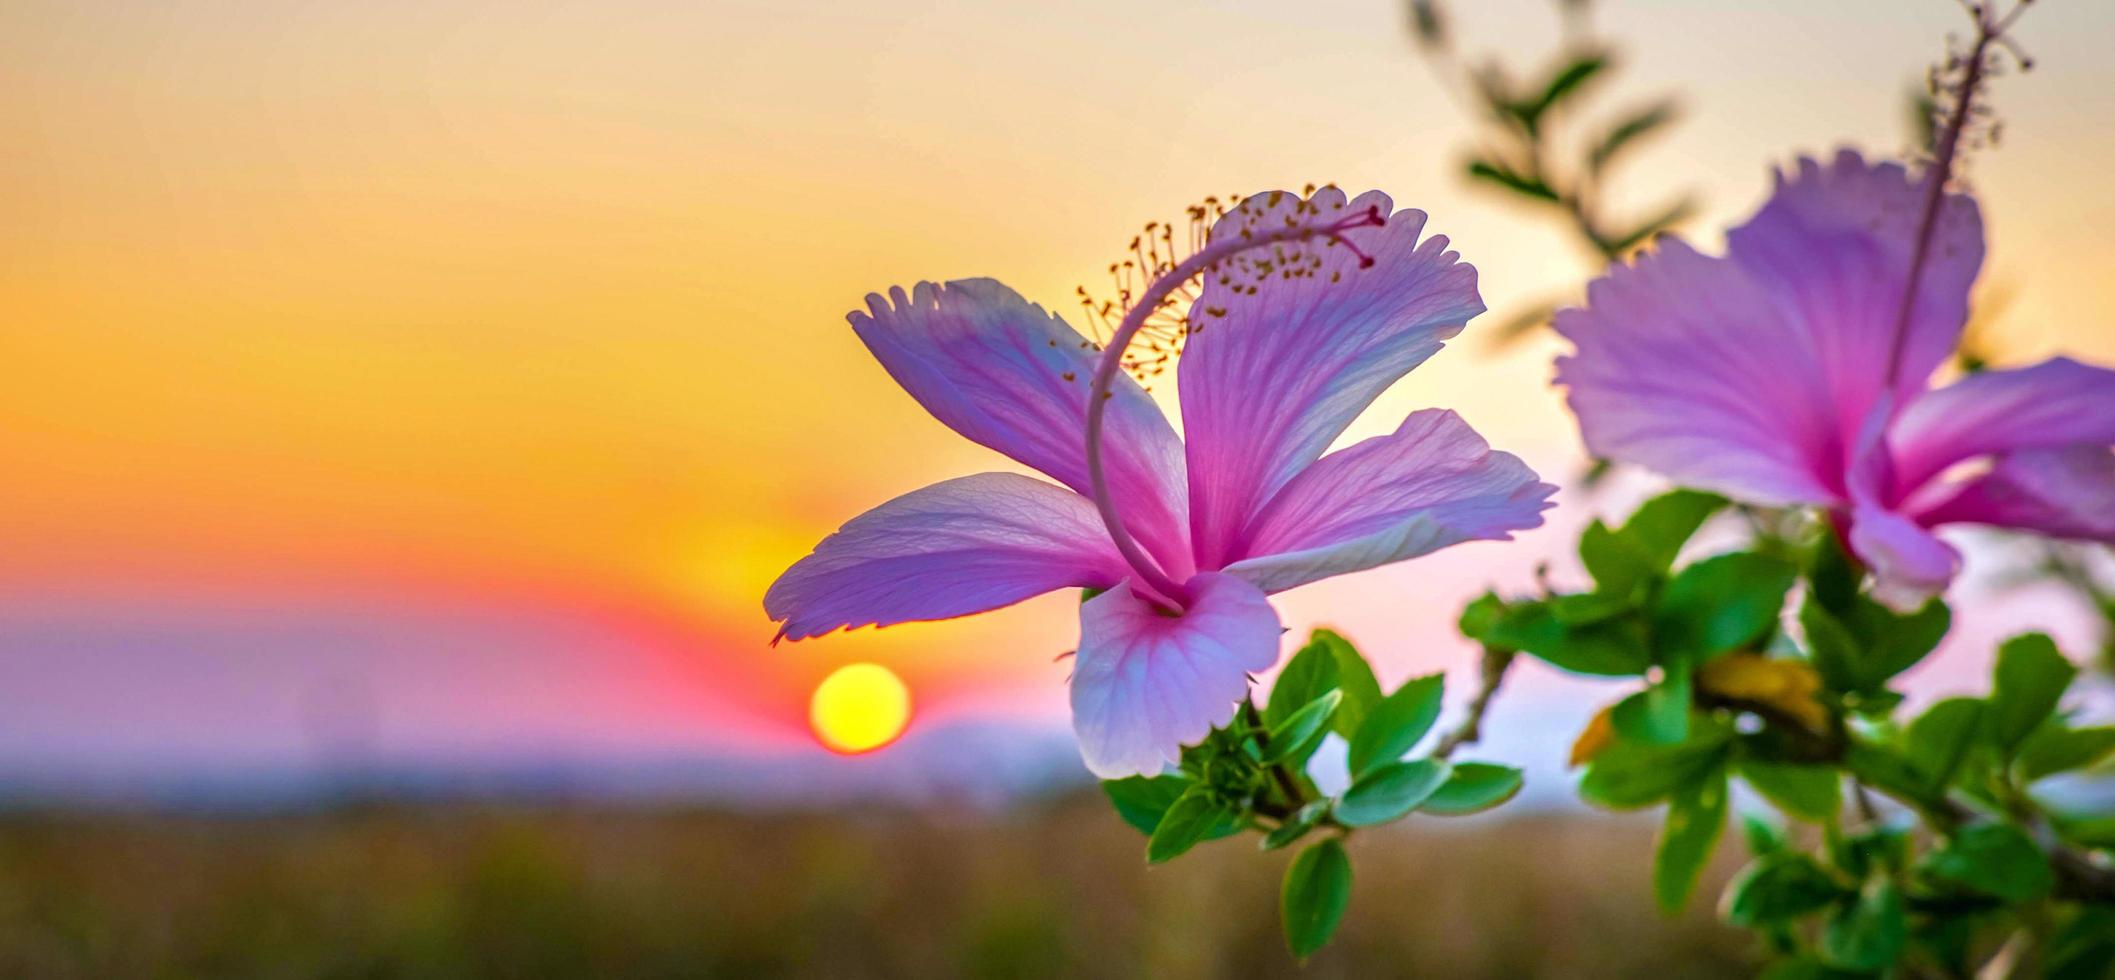 belle fleur d'hibiscus rose en fleurs contre la lumière dorée du coucher du soleil et fond naturel de champ de fleurs d'hibiscus rose doux dix floues photo